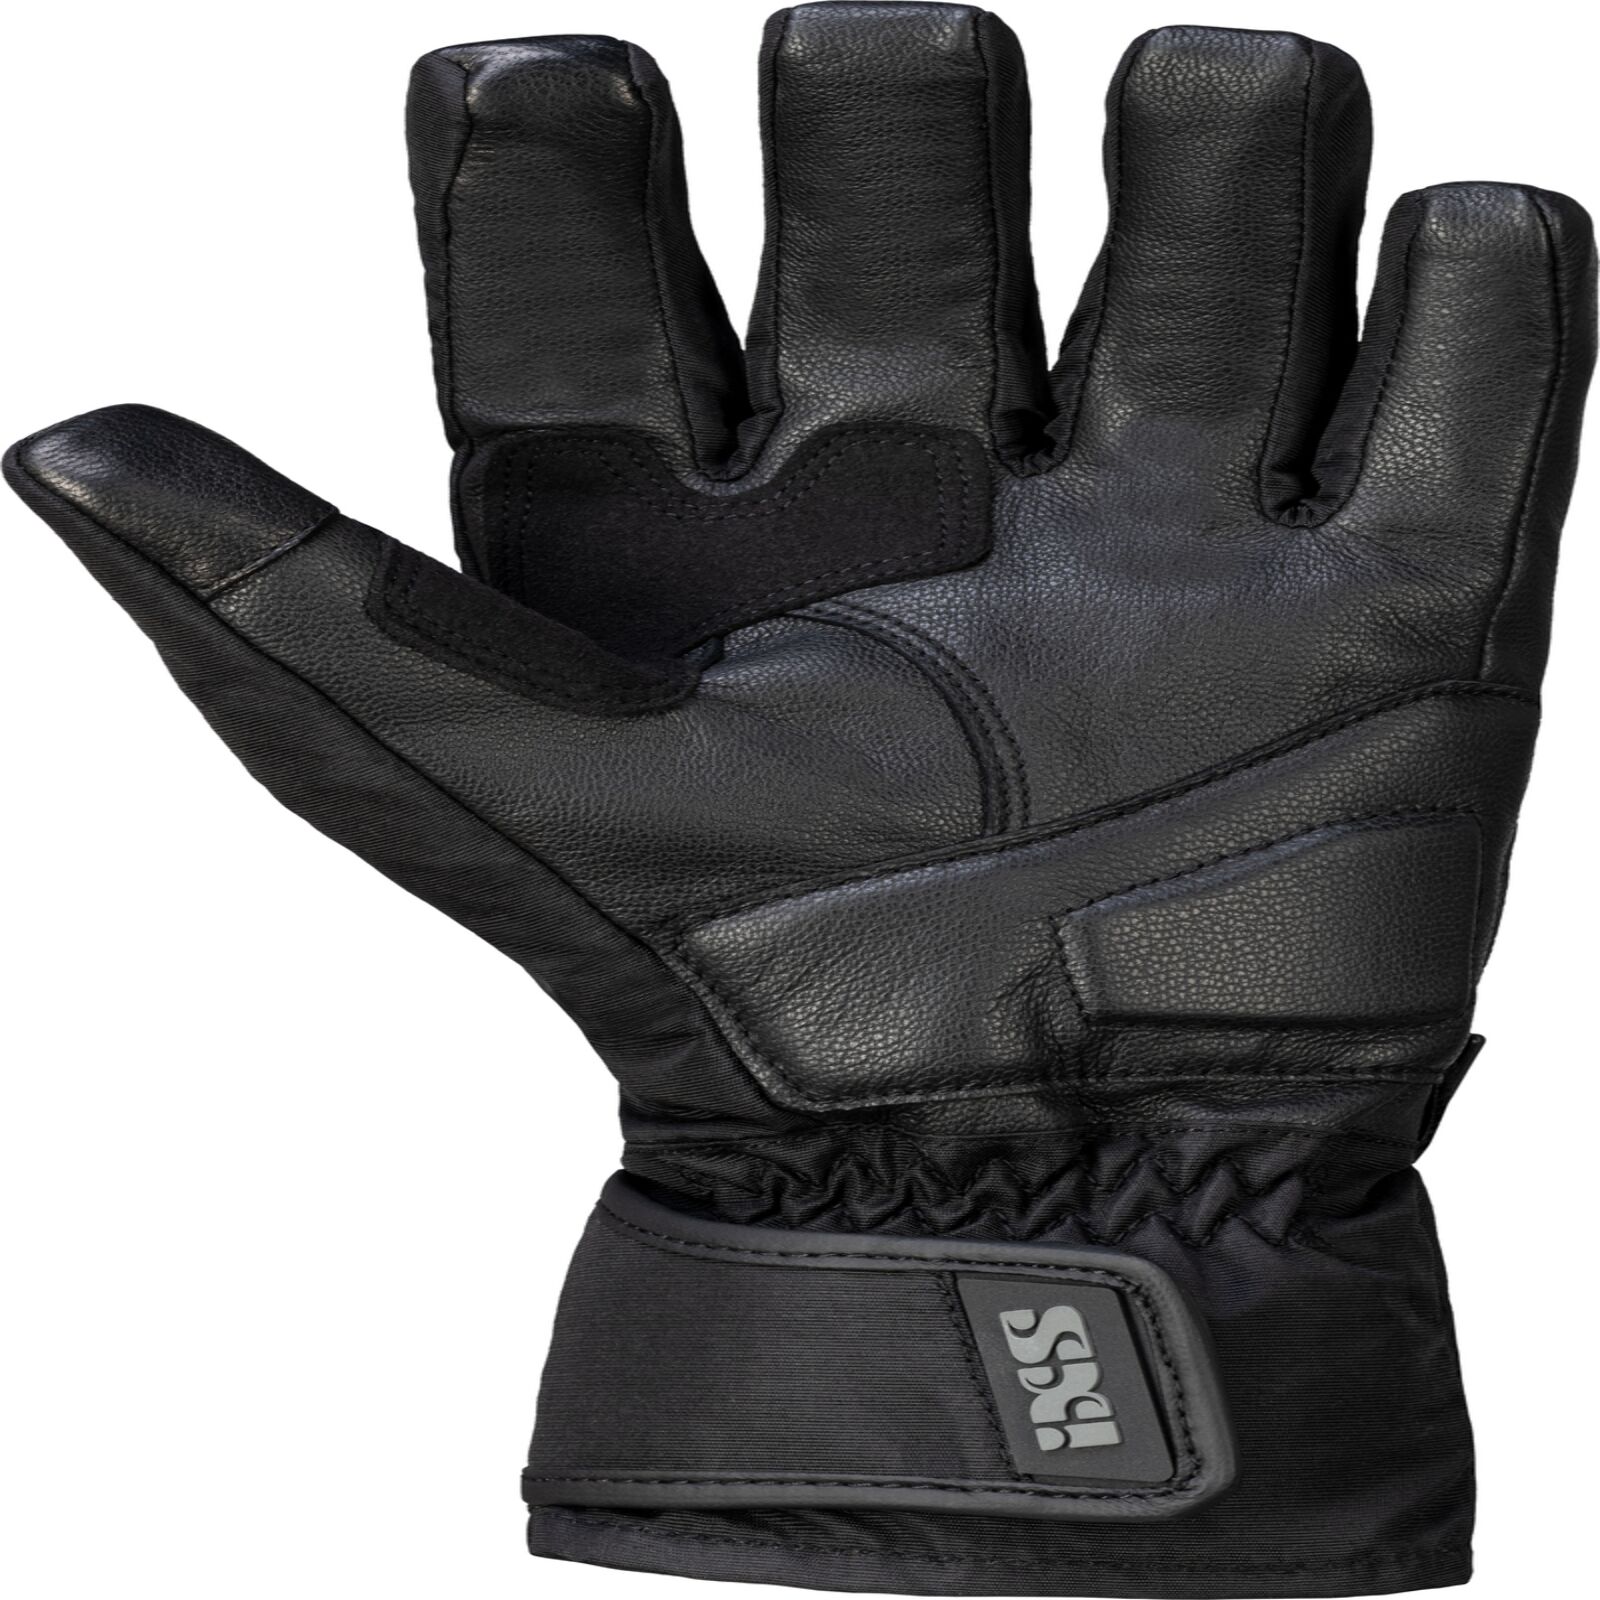 Obrázek produktu Dámské rukavice iXS SONAR-GTX 2.0 X41030 černý DM X41030-003-DM